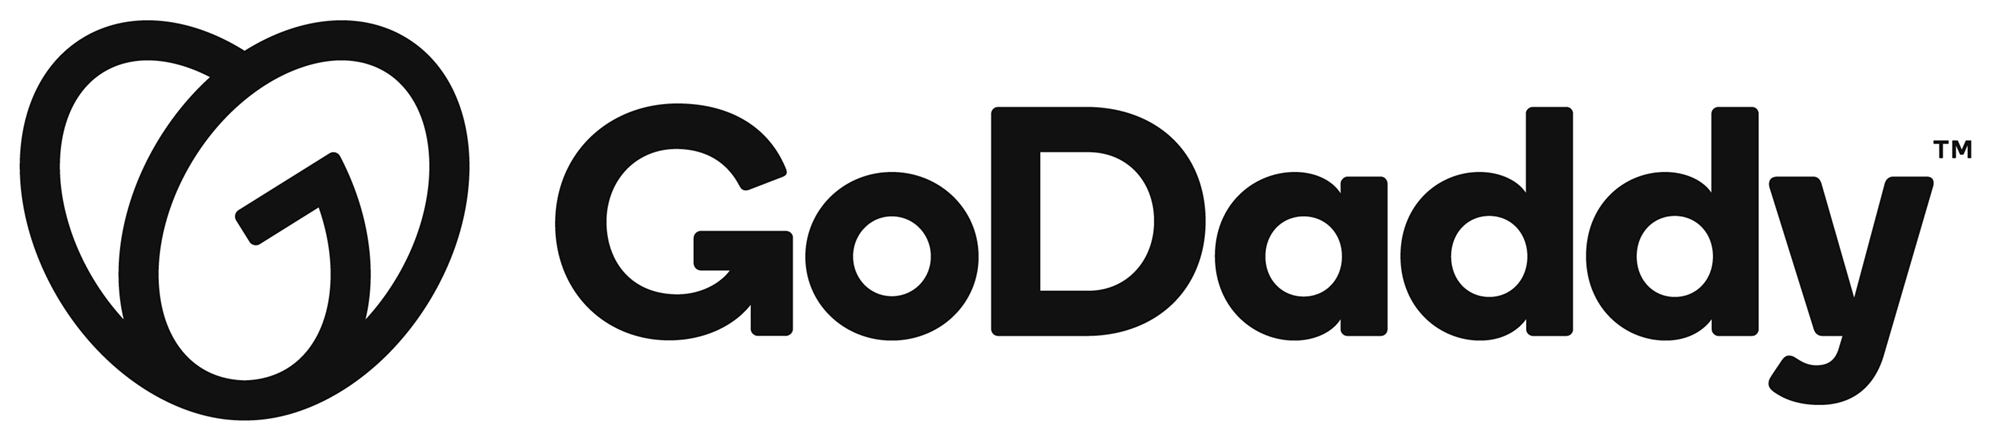 01-godaddy_2020_logo_a.png